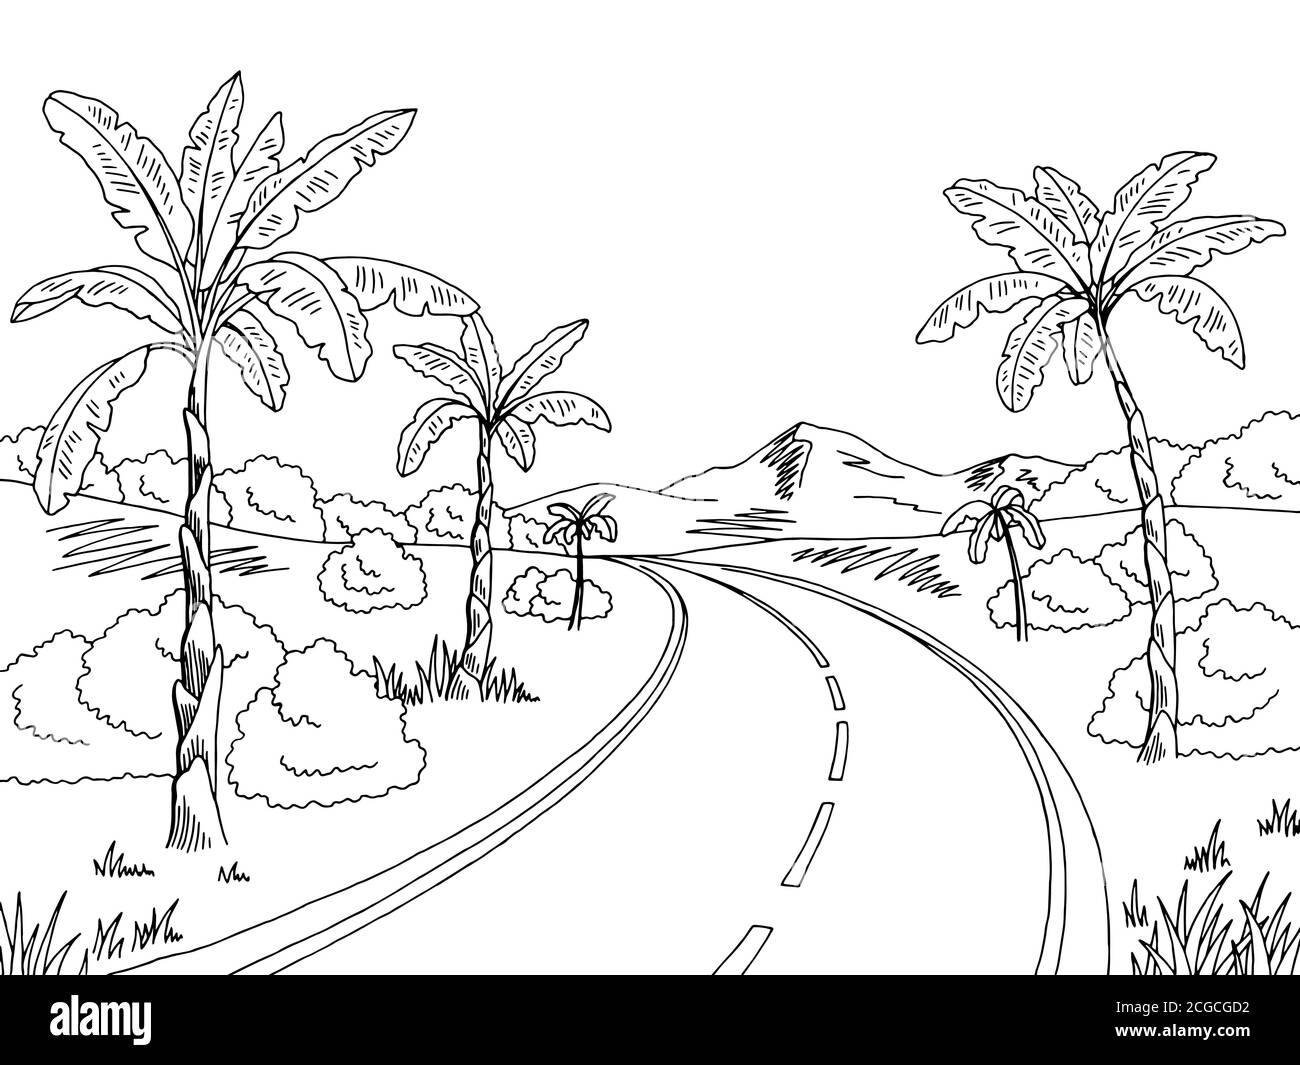 Jungle Road Graphic noir blanc paysage dessin illustration vecteur Illustration de Vecteur